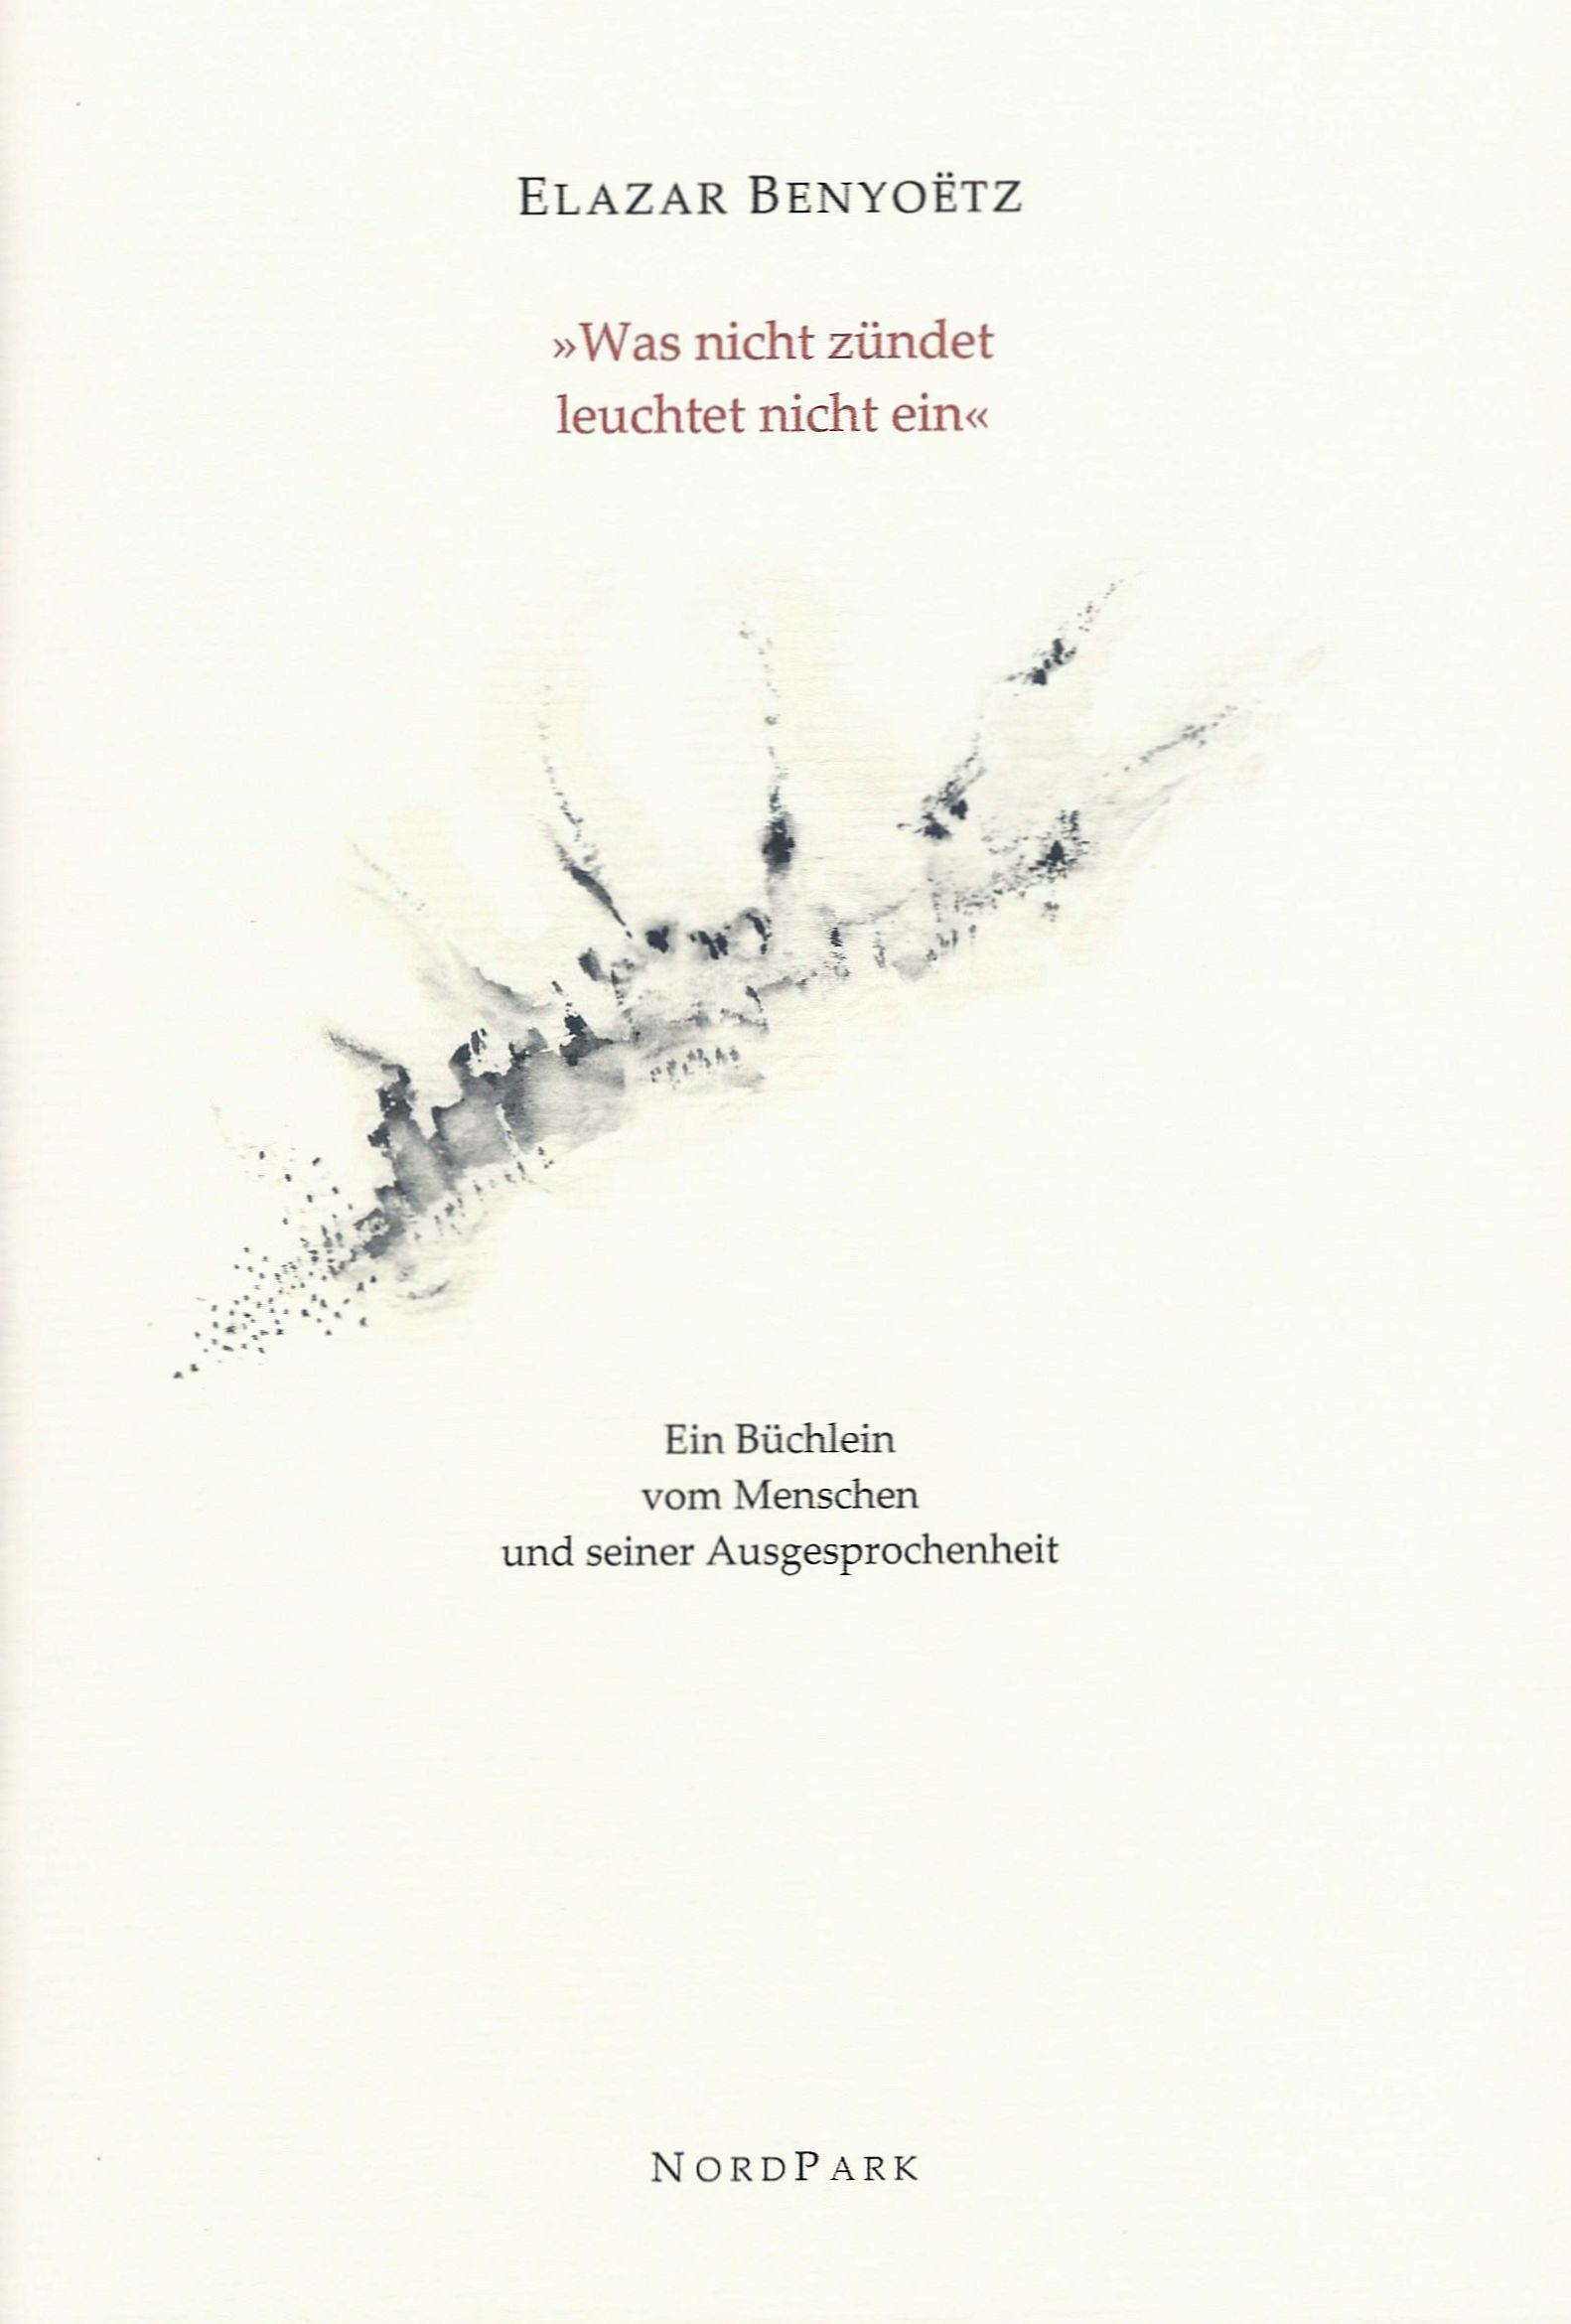 Die Besonderen Hefte: Benyoëtz - cover-benyoetz-was-nicht-zuendet.jpg